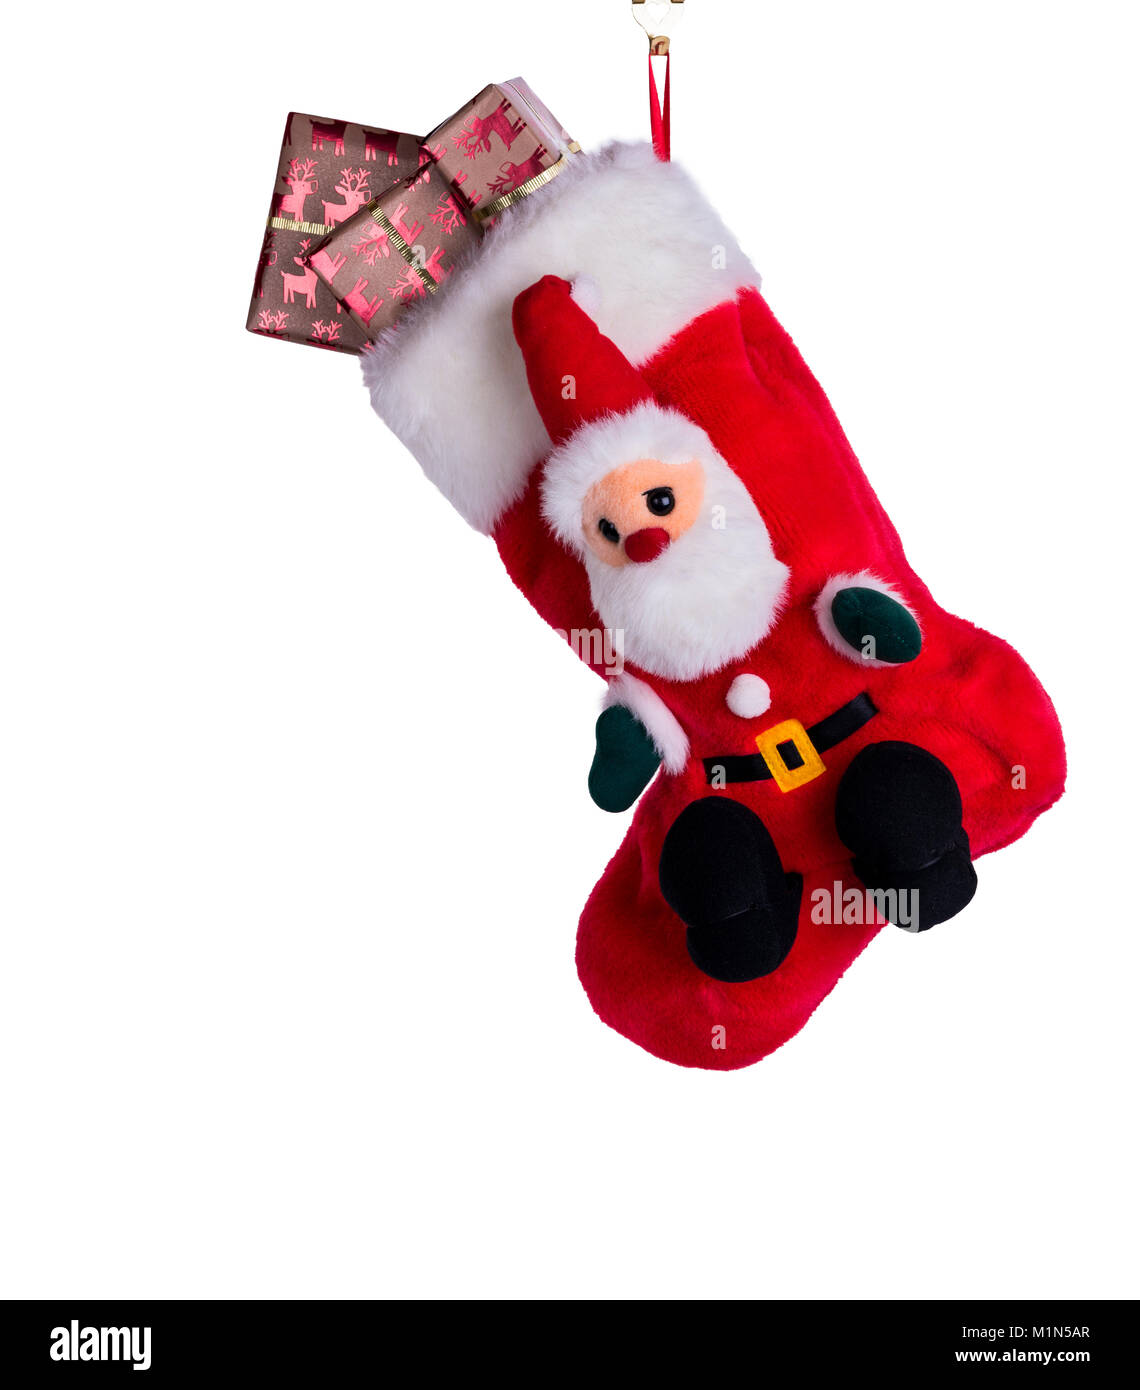 Traditionelle Weihnachten oder Xmas Stocking, mit Geschenk eingepackten Geschenke oder Geschenke gefüllt. Stockfoto